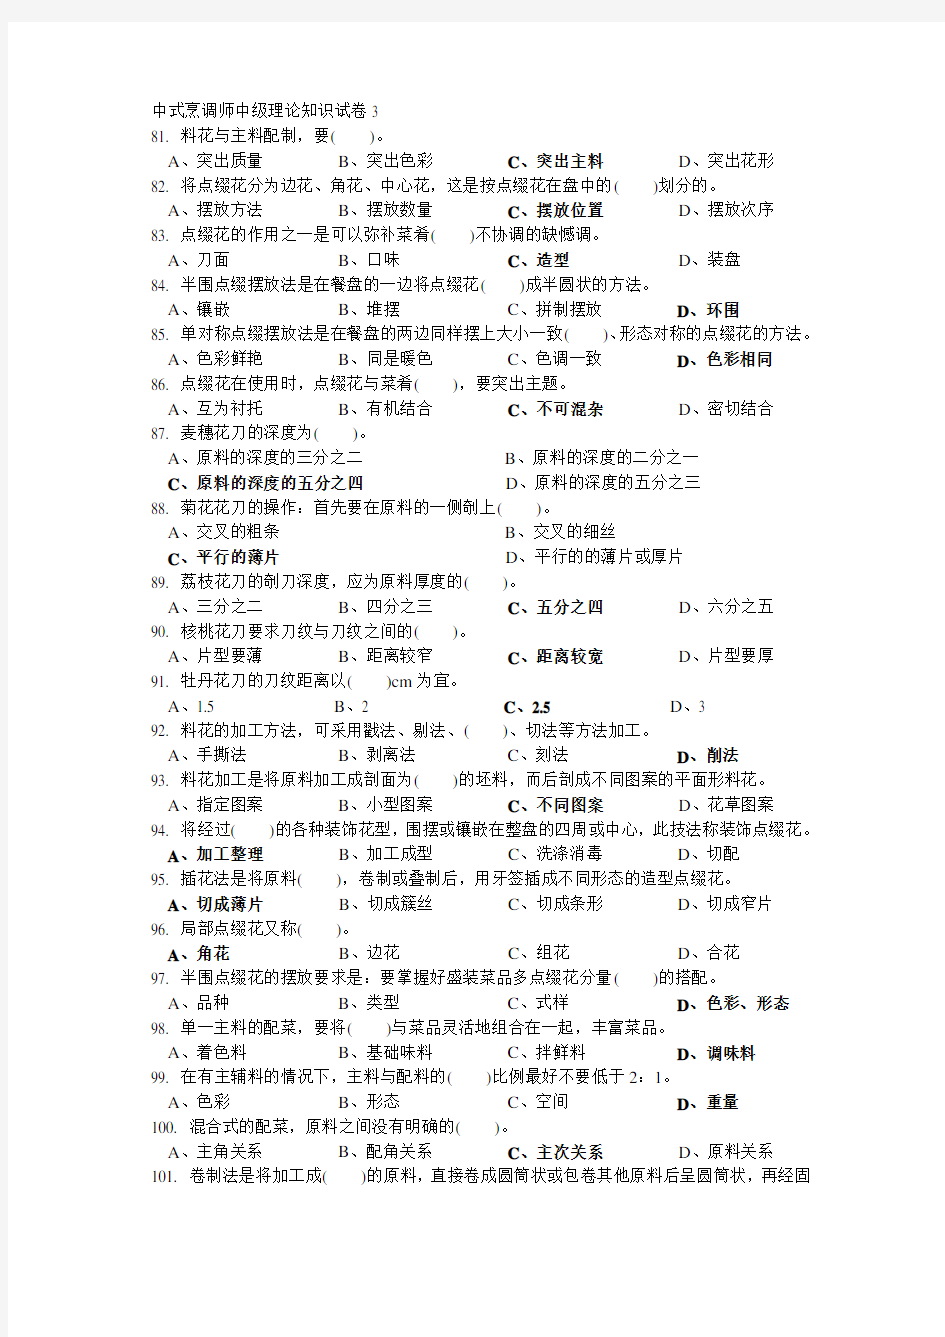 中式烹调师中级理论知识试卷3